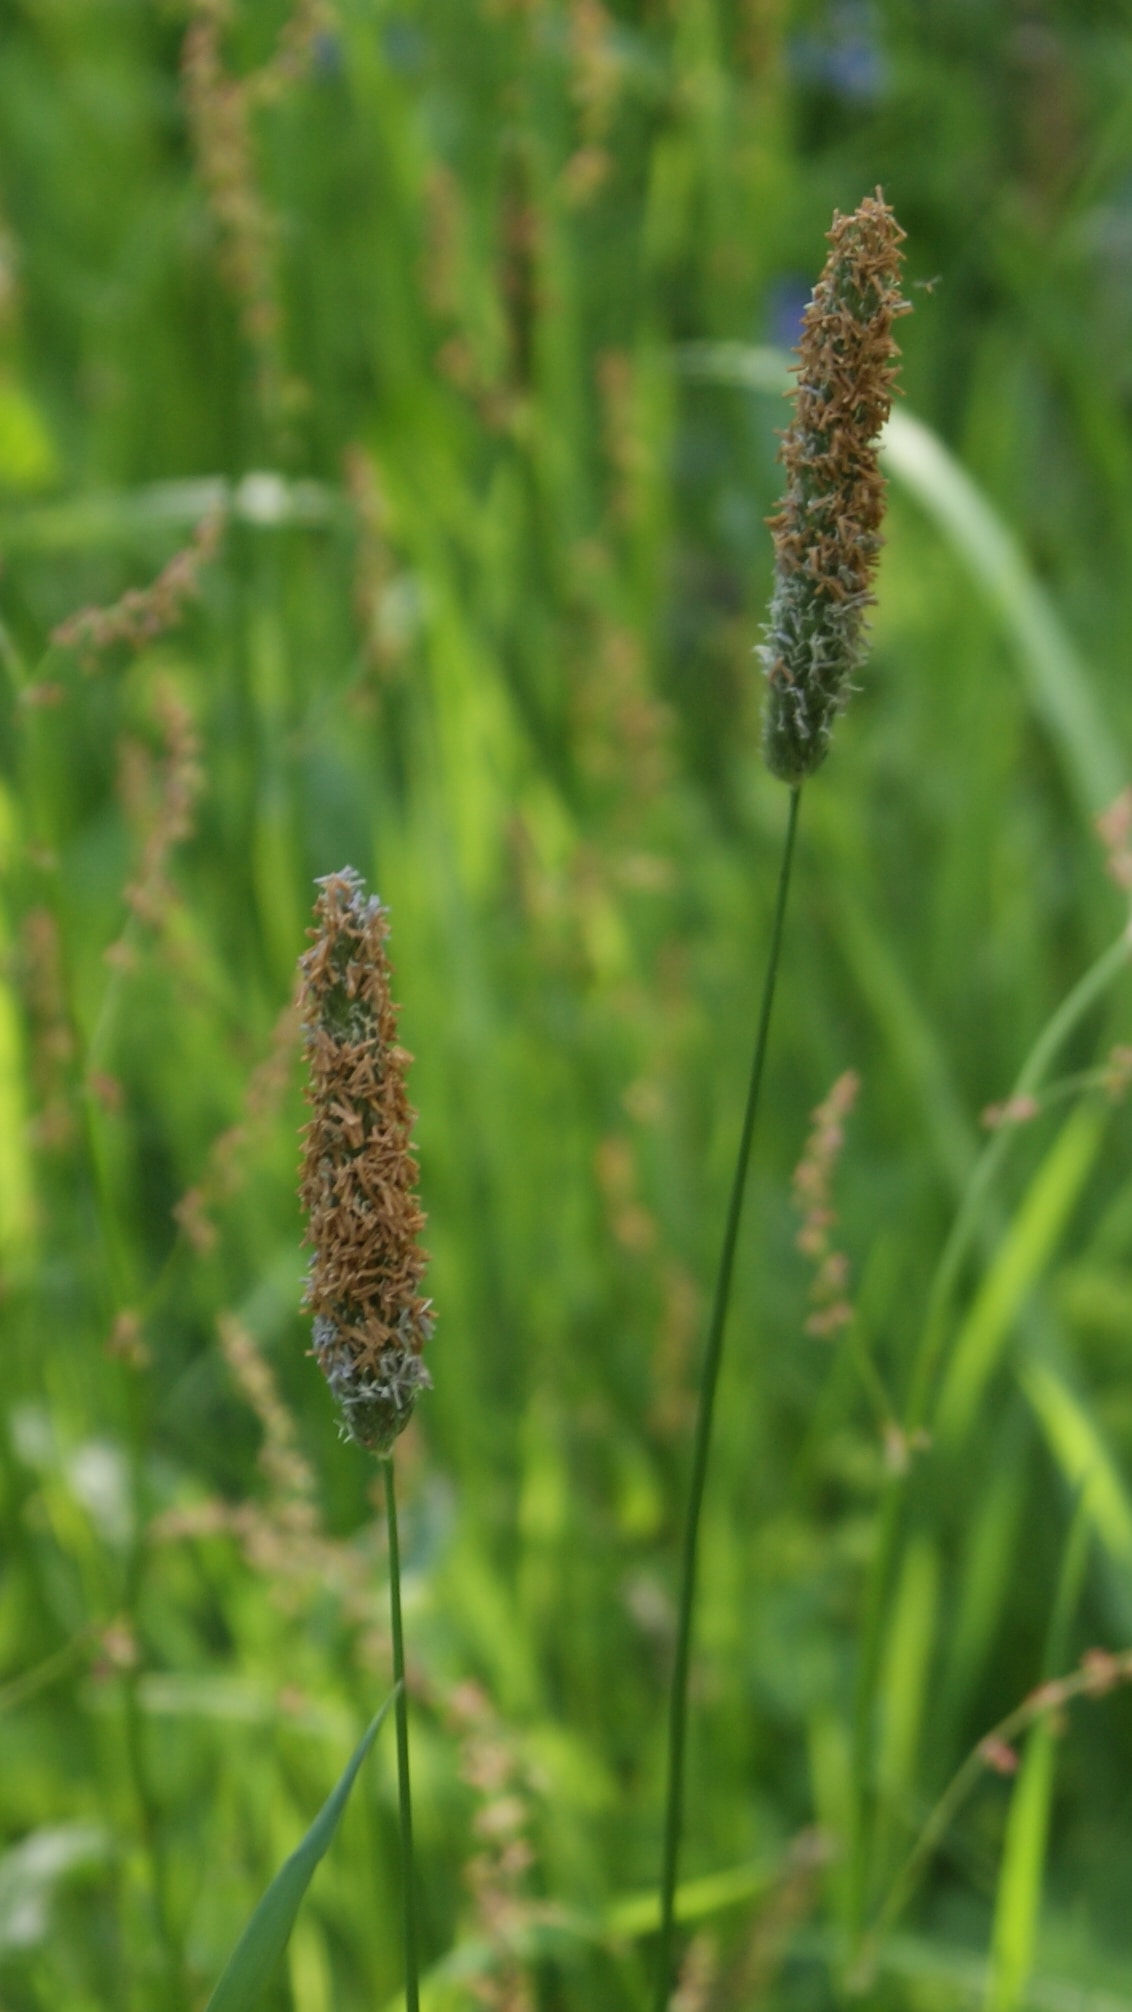 Tymotka łąkowa, brzanka pastewna (Phleum pratense L.) – gatunek rośliny zielnej z rodziny wiechlinowatych (traw). W Polsce gatunek pospolity.